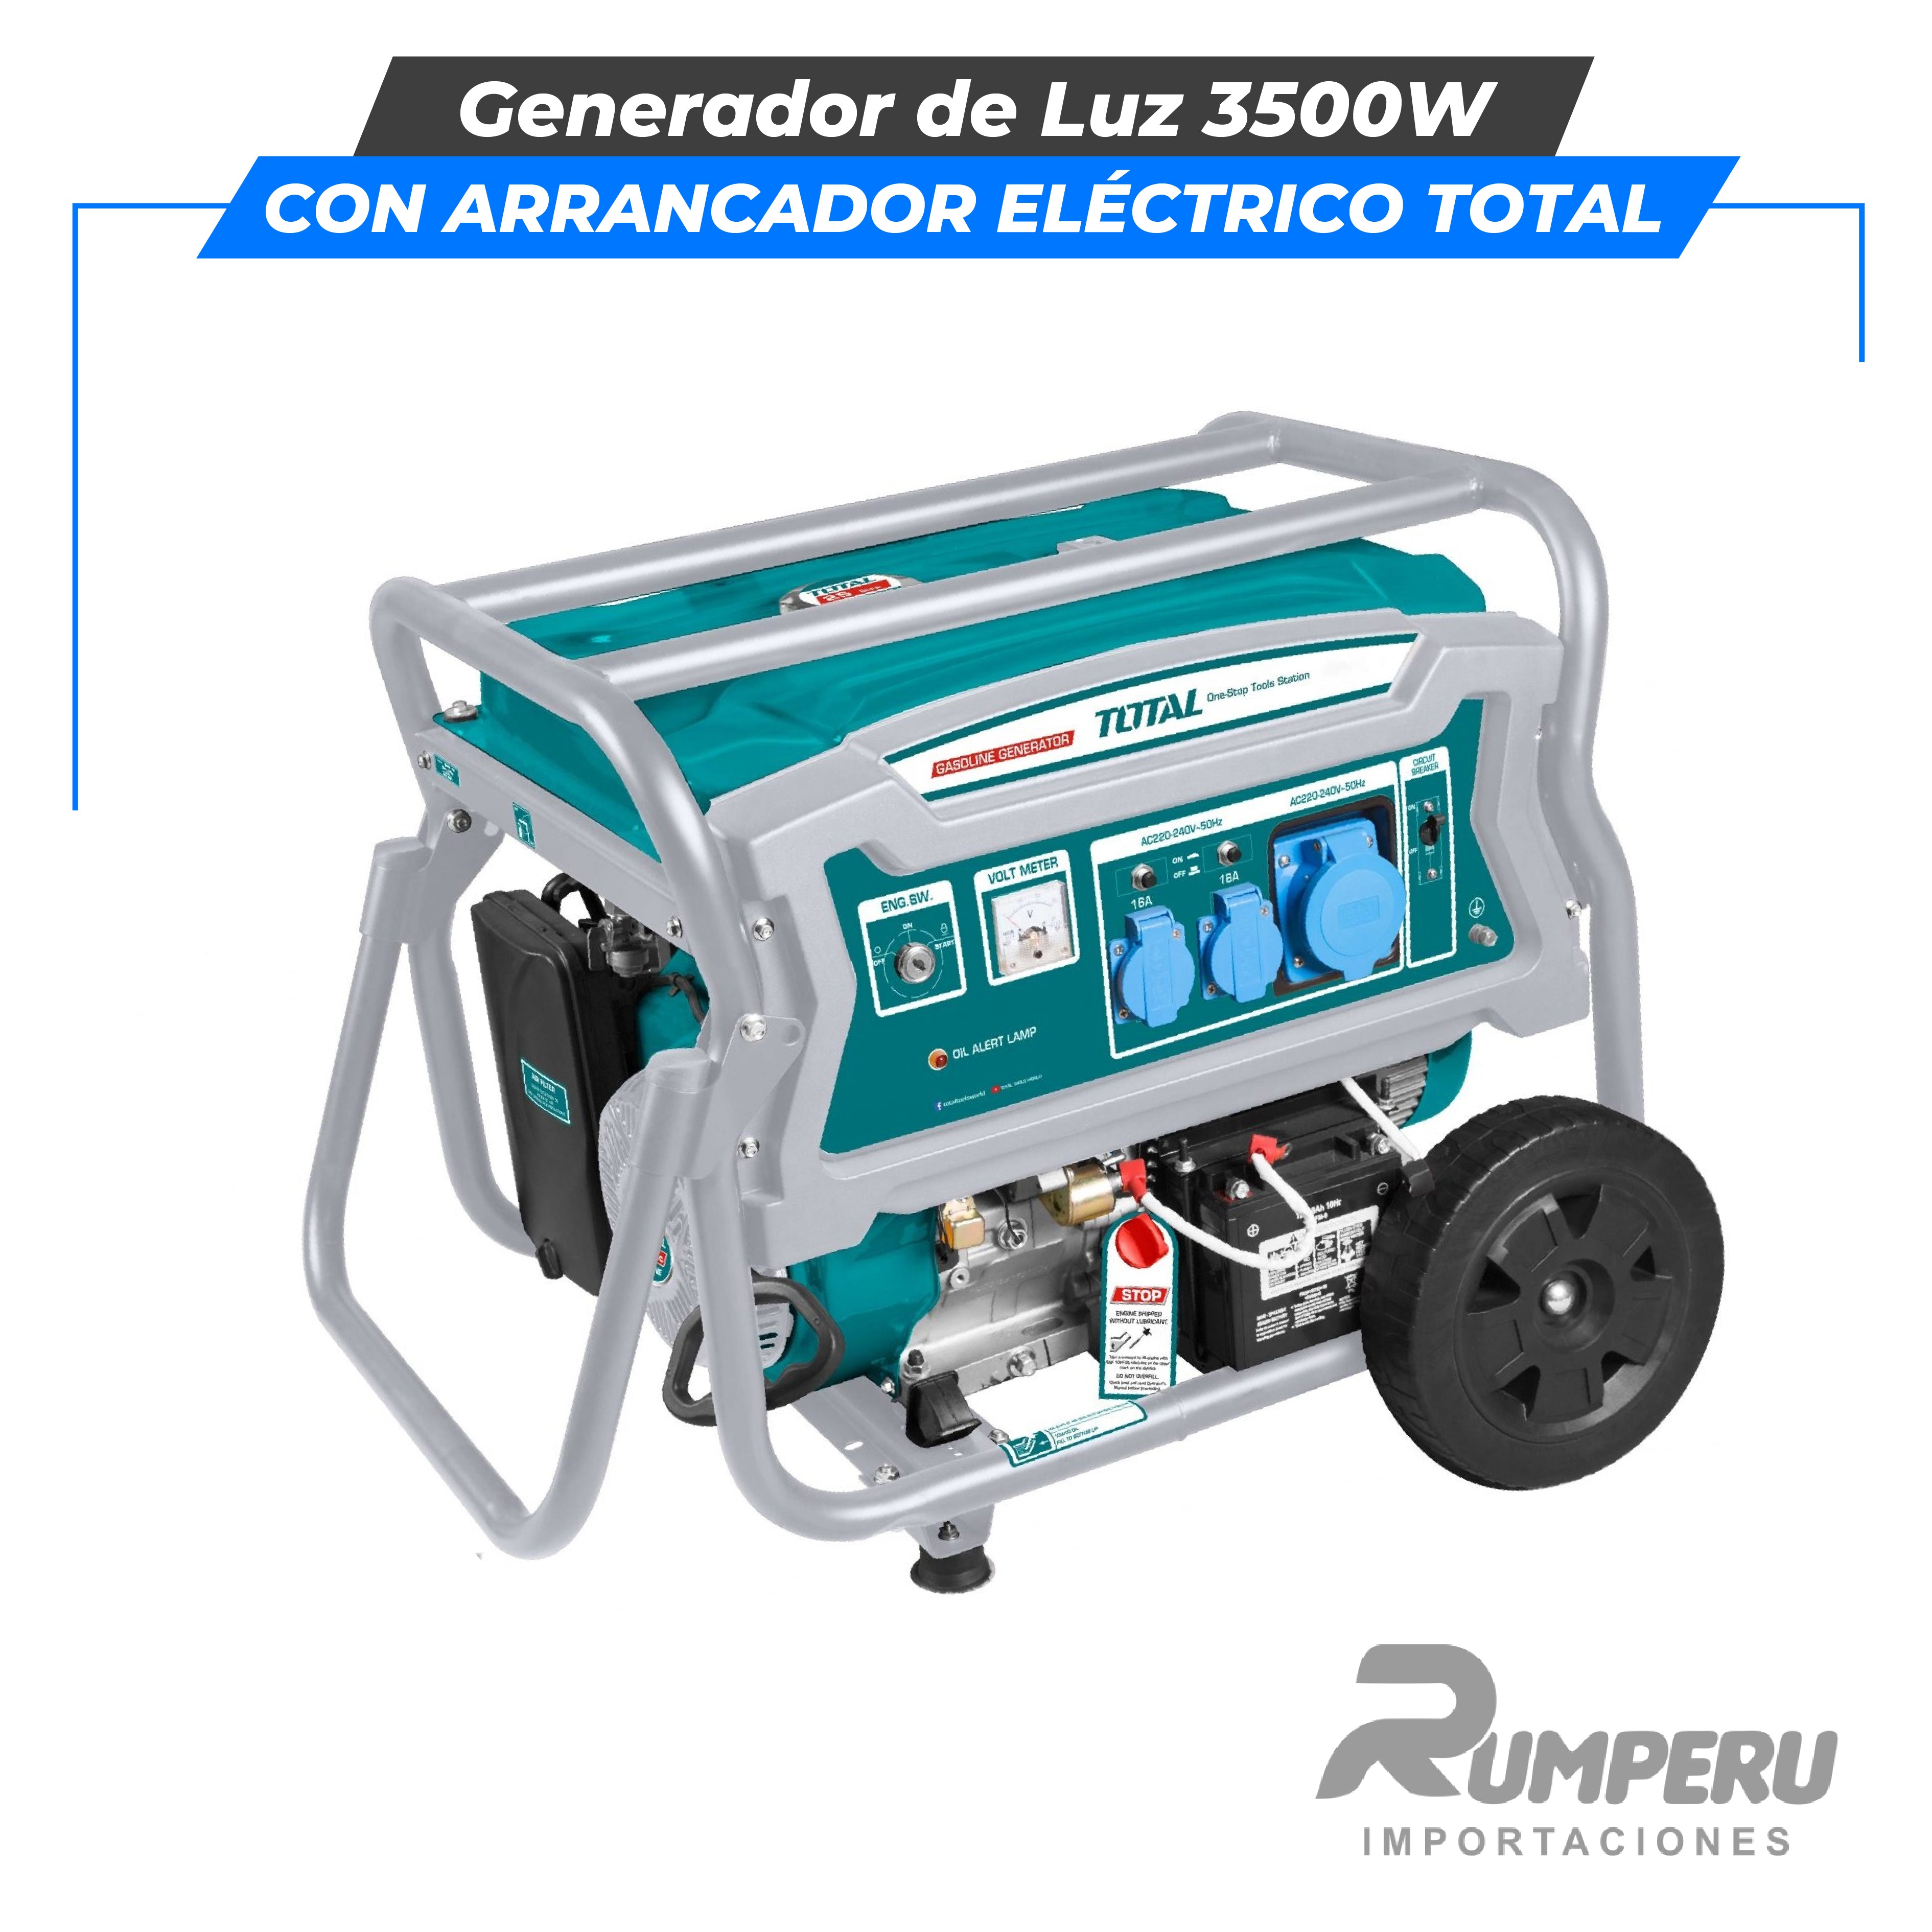 Generador de Luz 3500W (con arrancador eléctrico) TOTAL